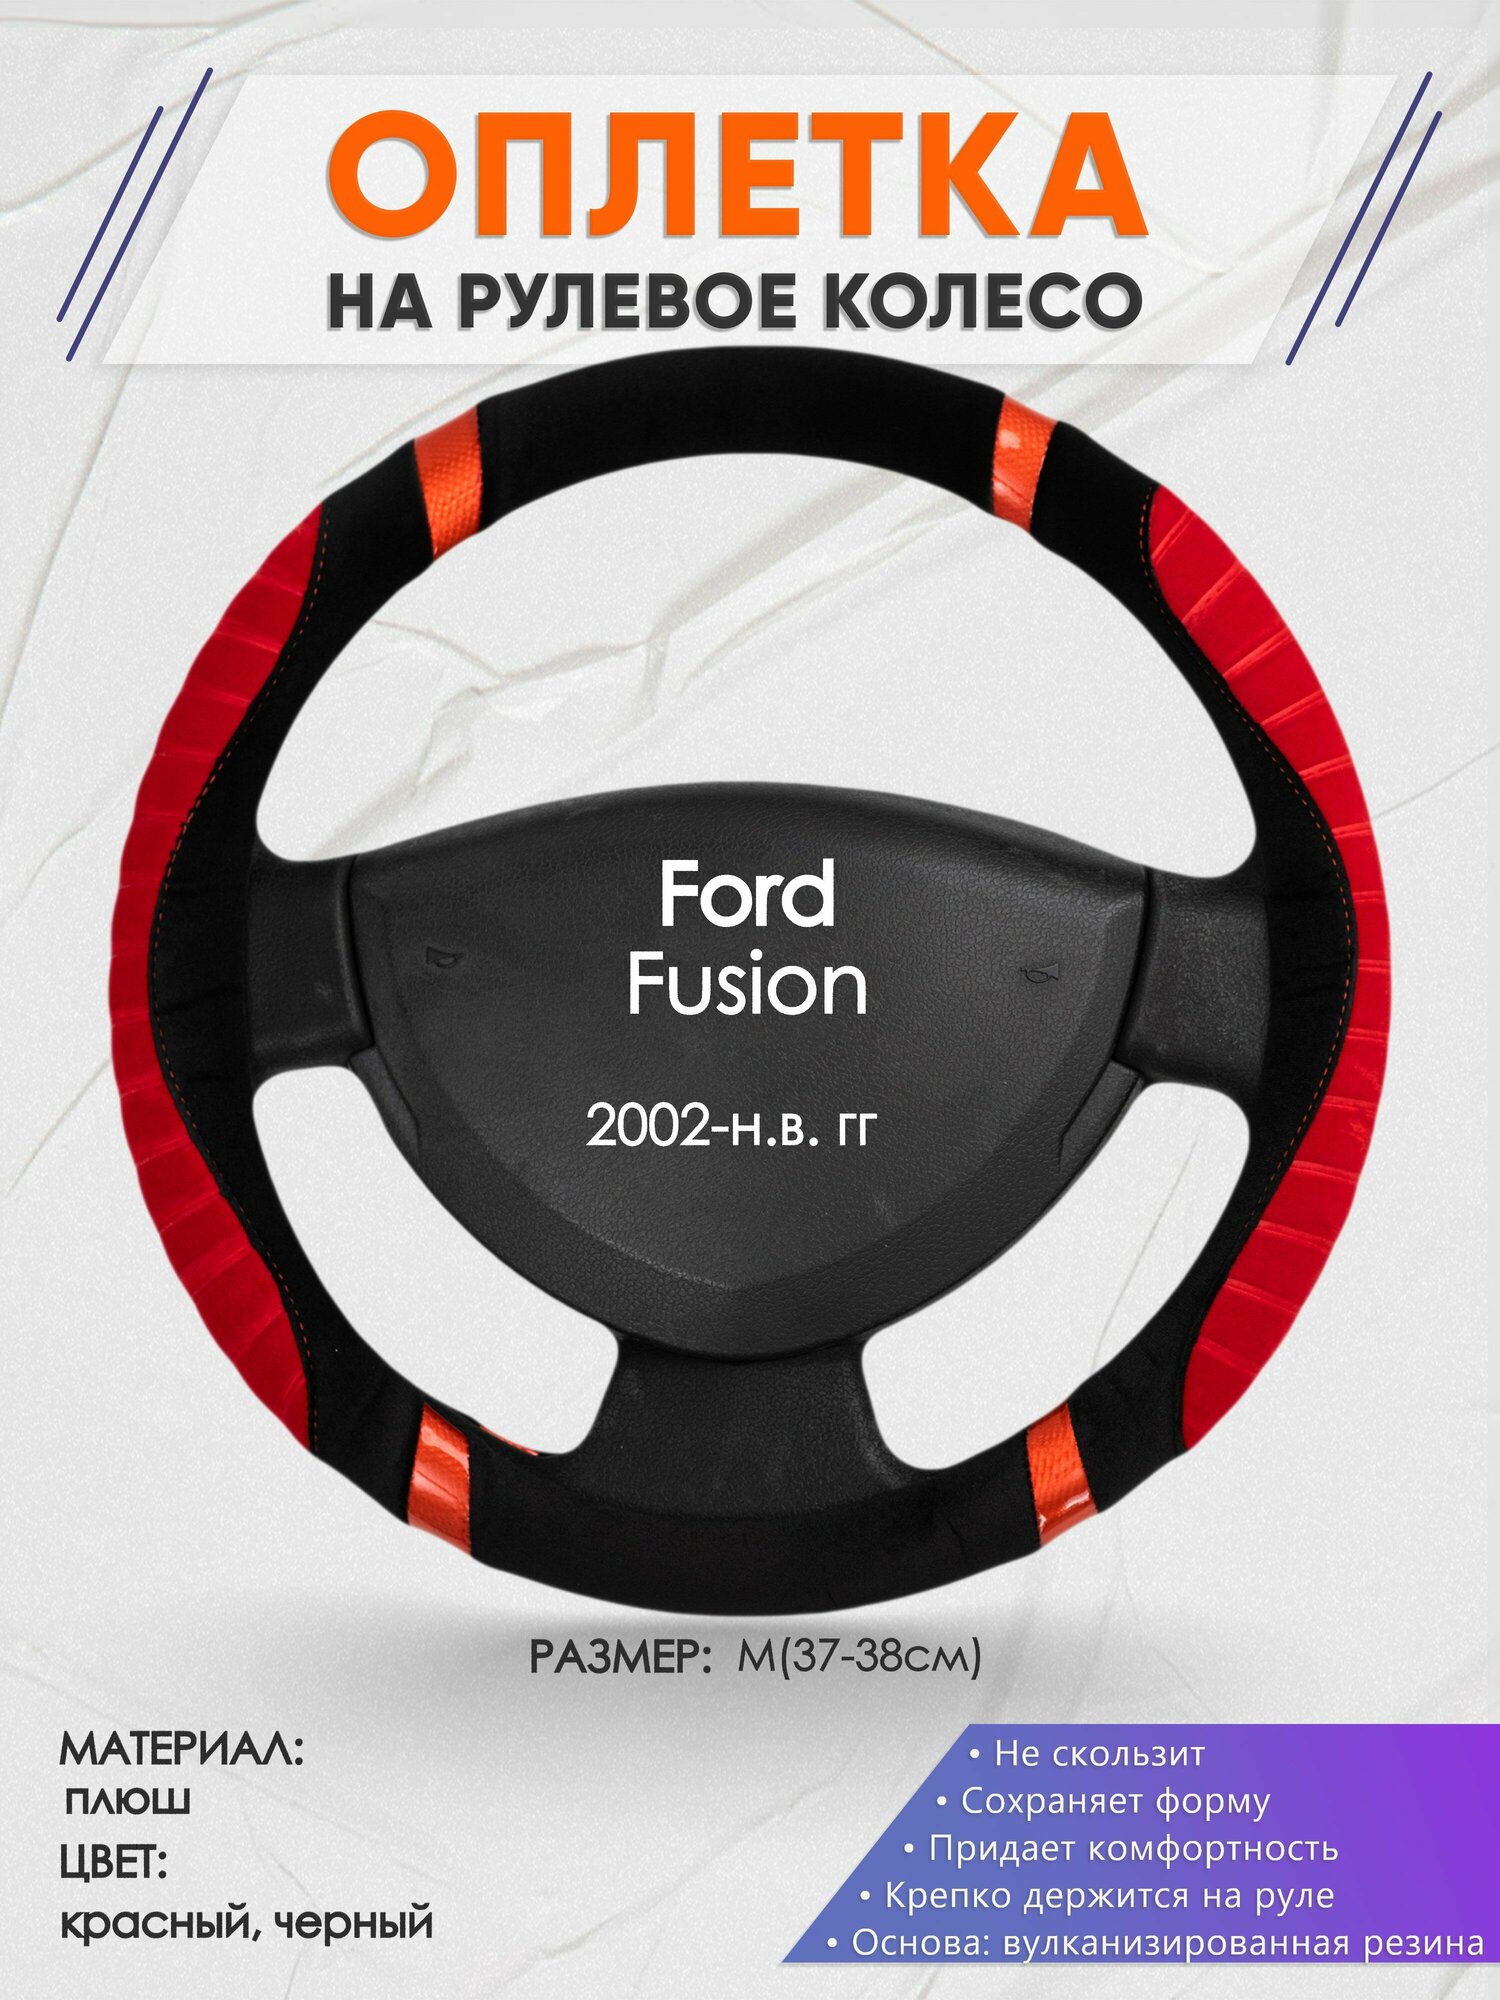 Оплетка на руль для Ford Fusion (Форд Фьюжн) 2002-н. в M(37-38см) Замша 35